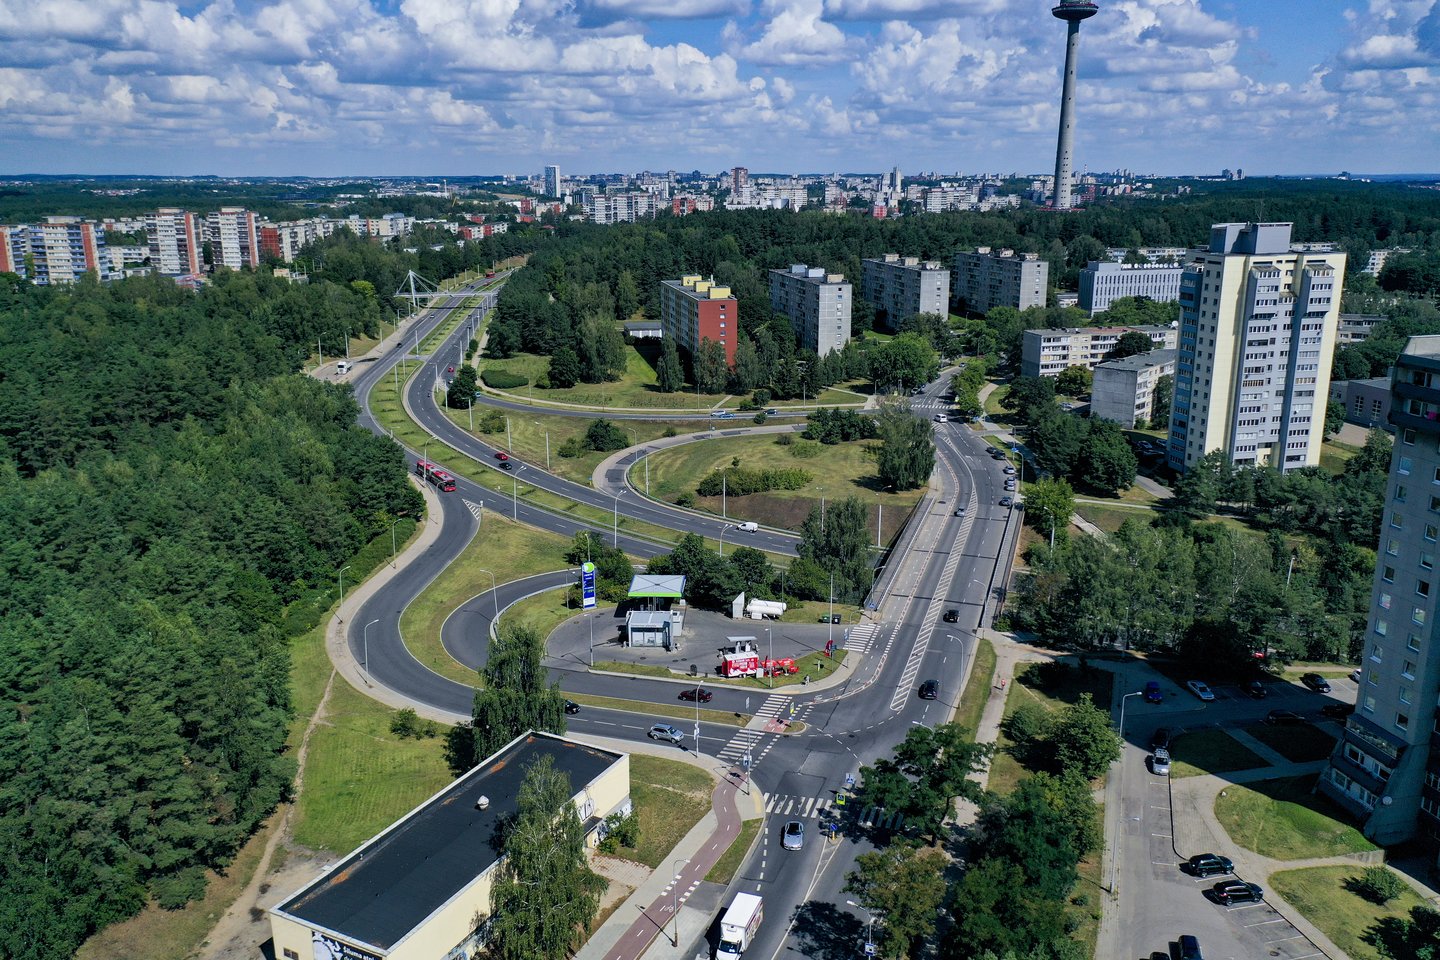 Vilniaus miesto savivaldybė iki 2030-ųjų sieks atnaujinti sovietmečiu statytus rajonus juos labiau pritaikant šiuolaikinei gyvensenai, dalį gatvių žadama labiau pritaikyti pėstiesiems per artimiausius dvejus metus.<br>V.Ščiavinsko nuotr.